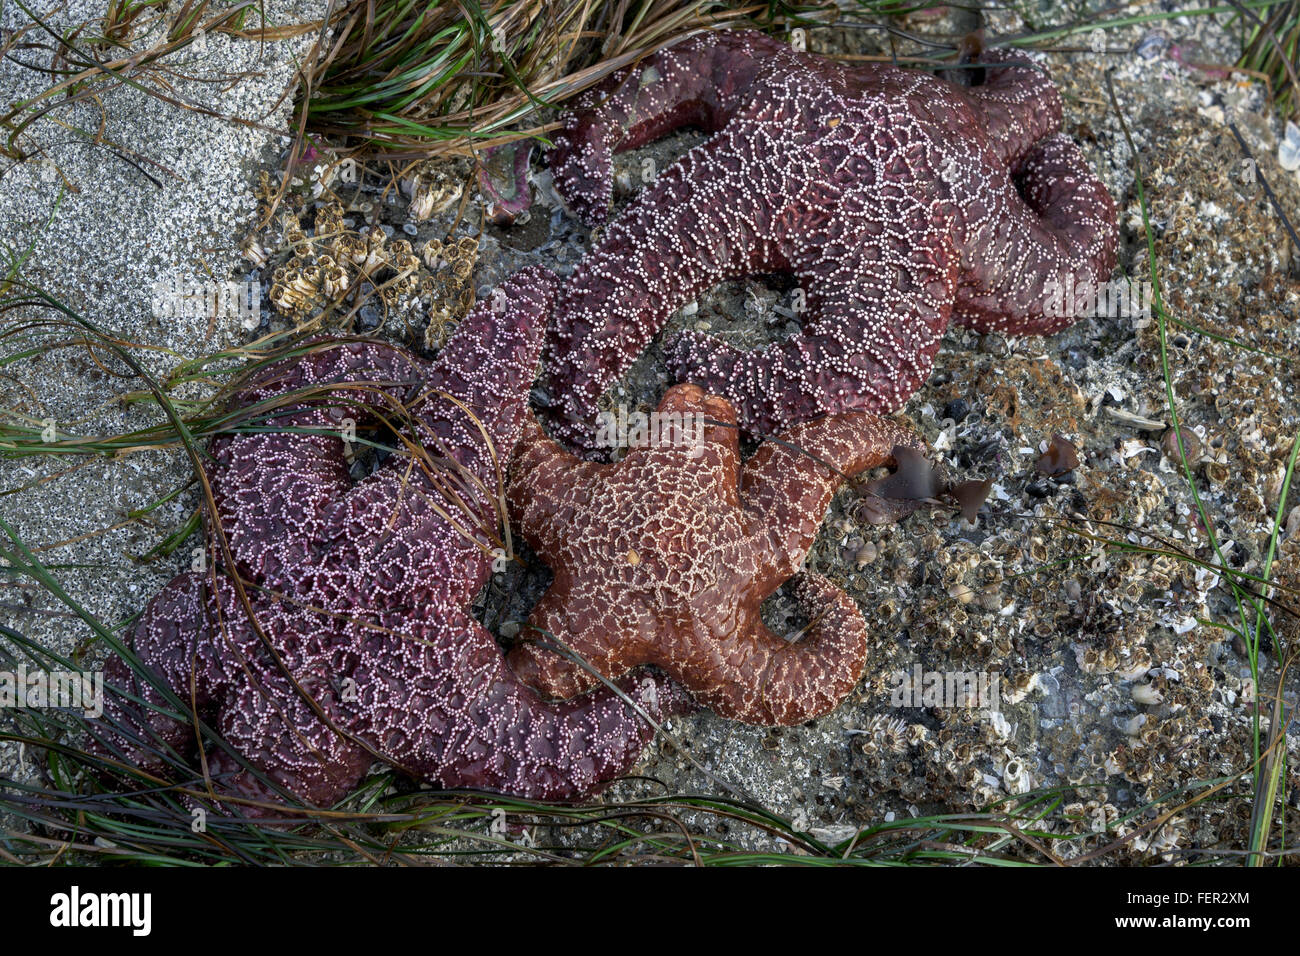 Three sea stars (Pisaster ochraceus) with eelgrass, Chesterman Beach, Tofino, British Columbia Stock Photo